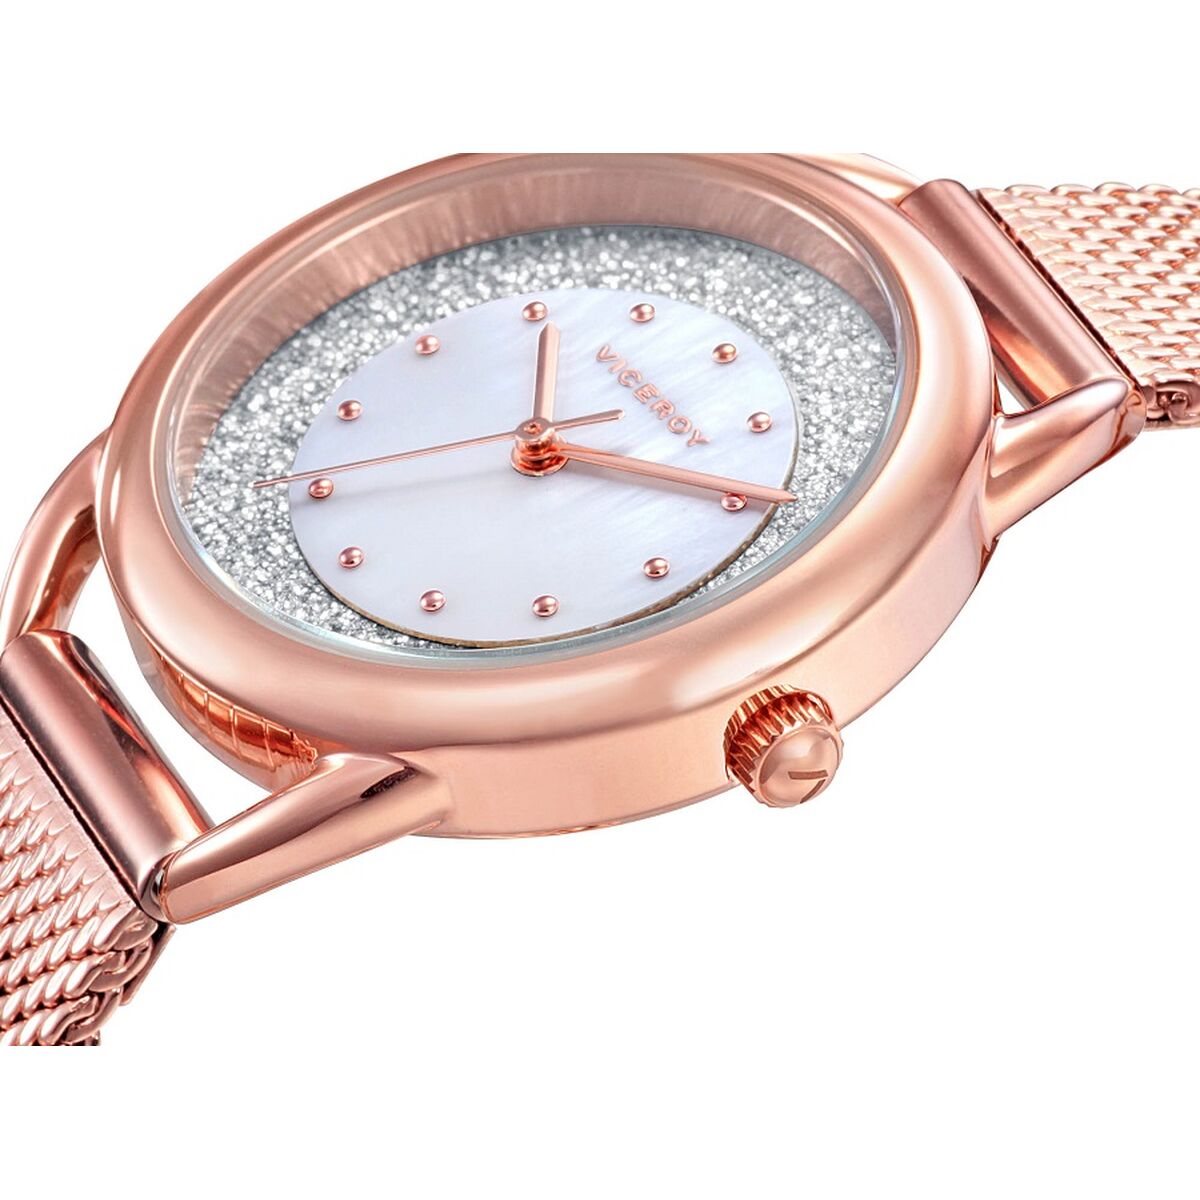 Horloge Dames Viceroy 401032-90 (Ø 30 mm)